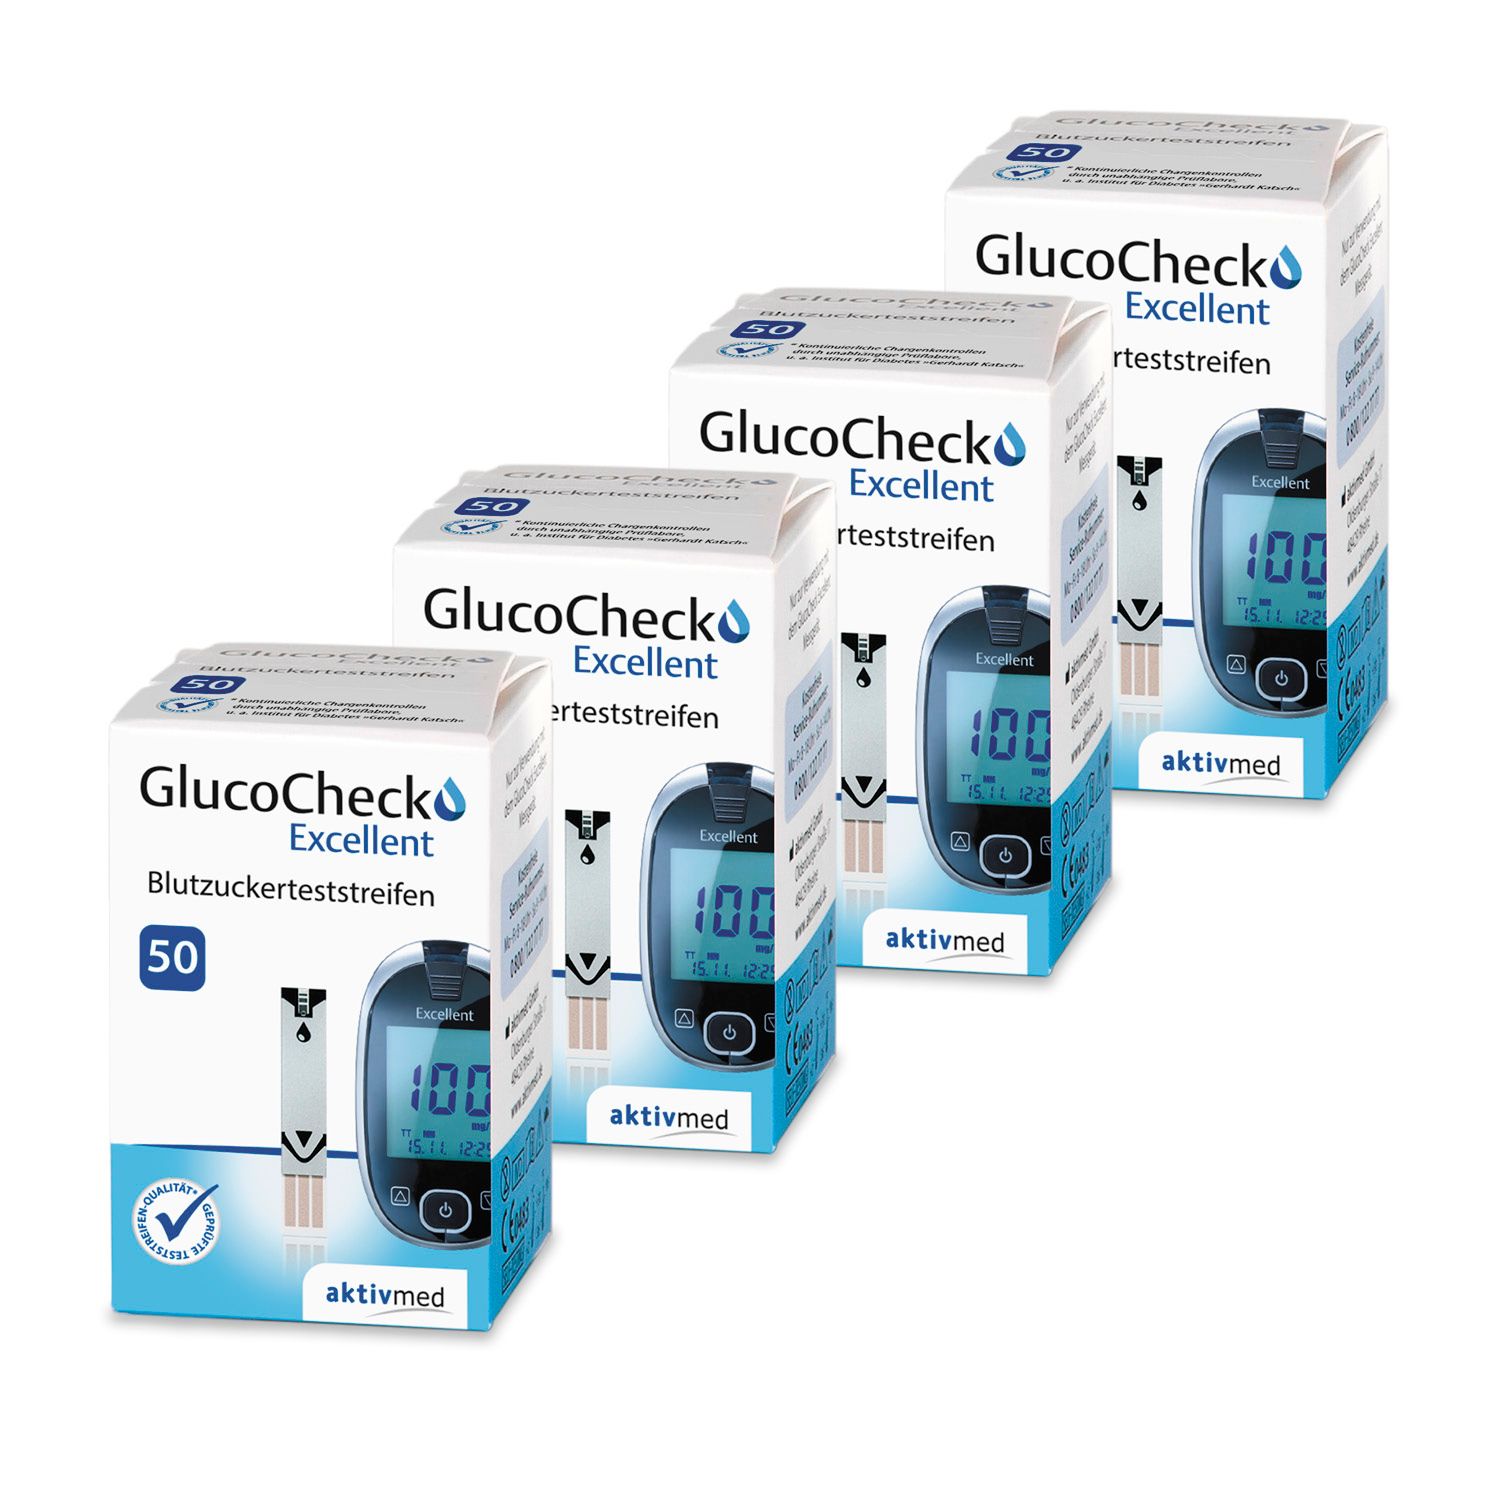 GlucoCheck Excellent Teststreifen (200 Stück) zur Diabetes-Kontrolle